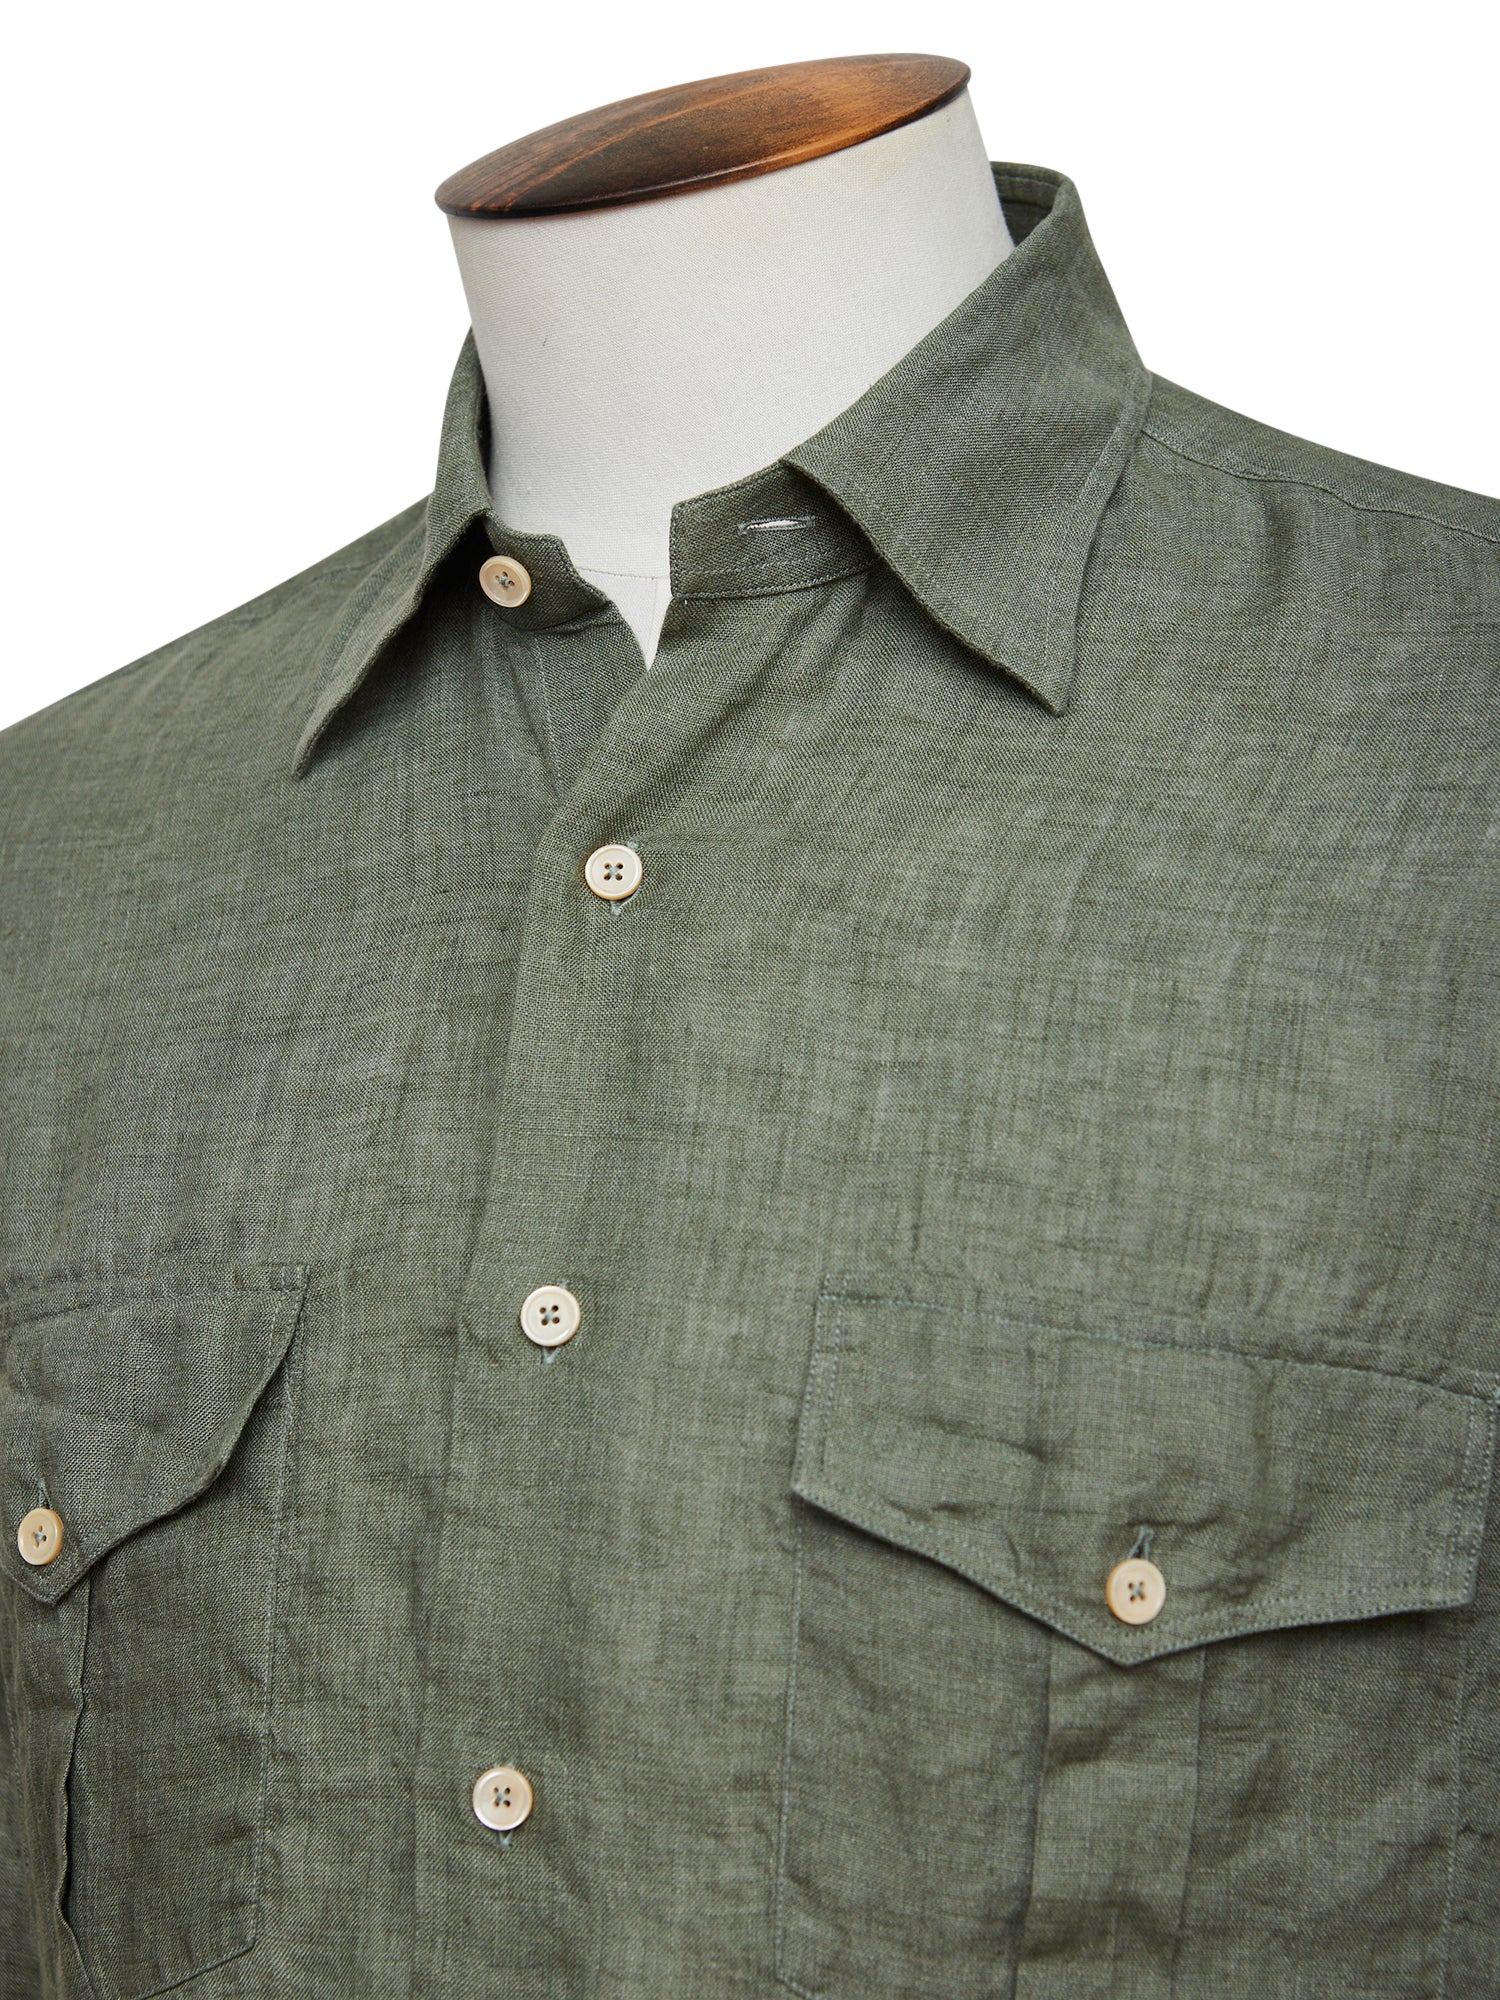 Pine Linen Military Shirt